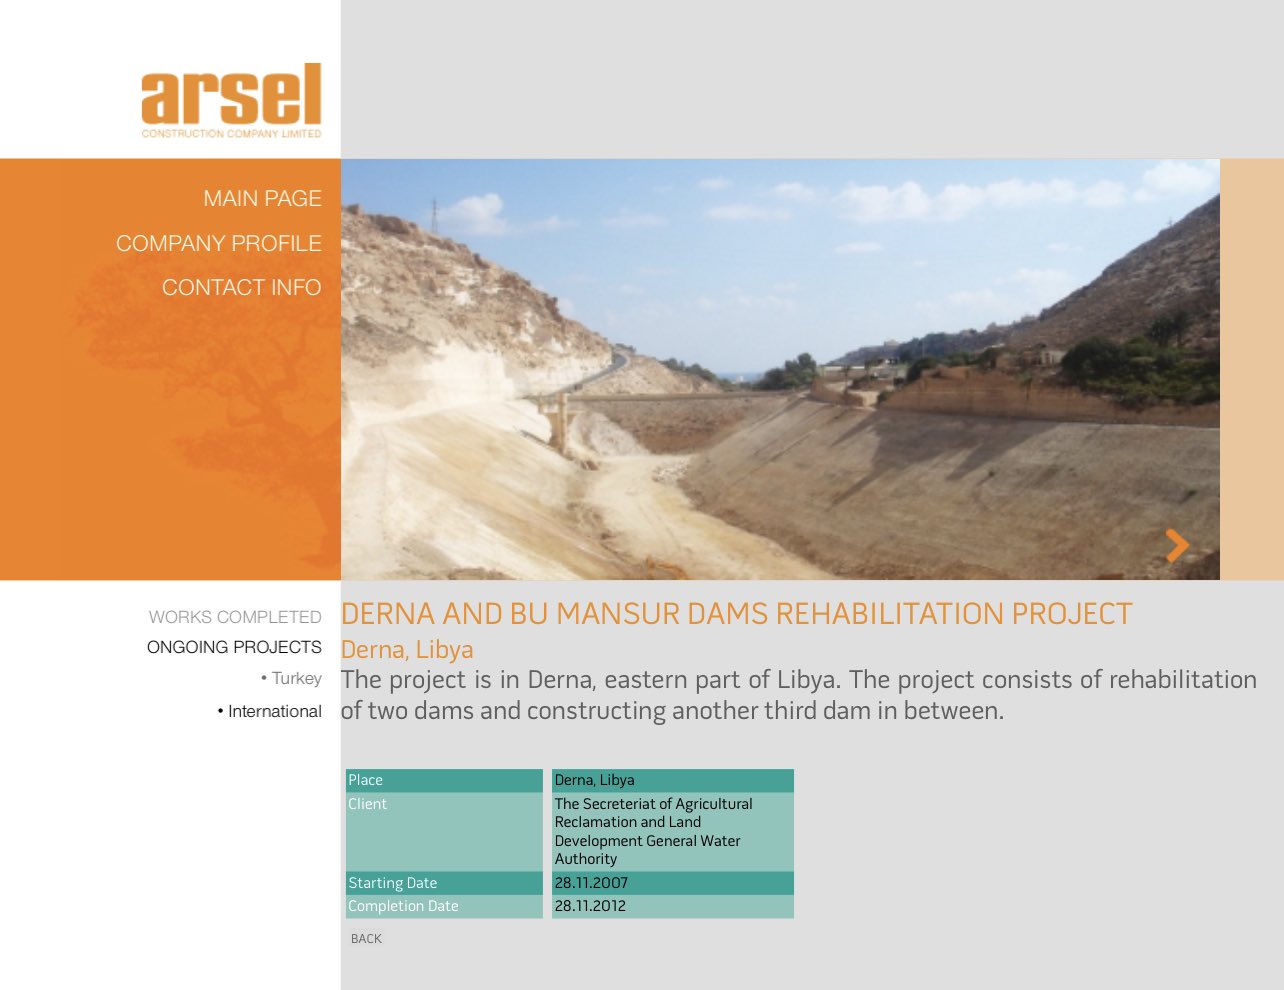 Capture d’écran du site web d’Arsel, aujourd’hui disparu, qui indique que les travaux sur les barrages ont été achevés en 2012